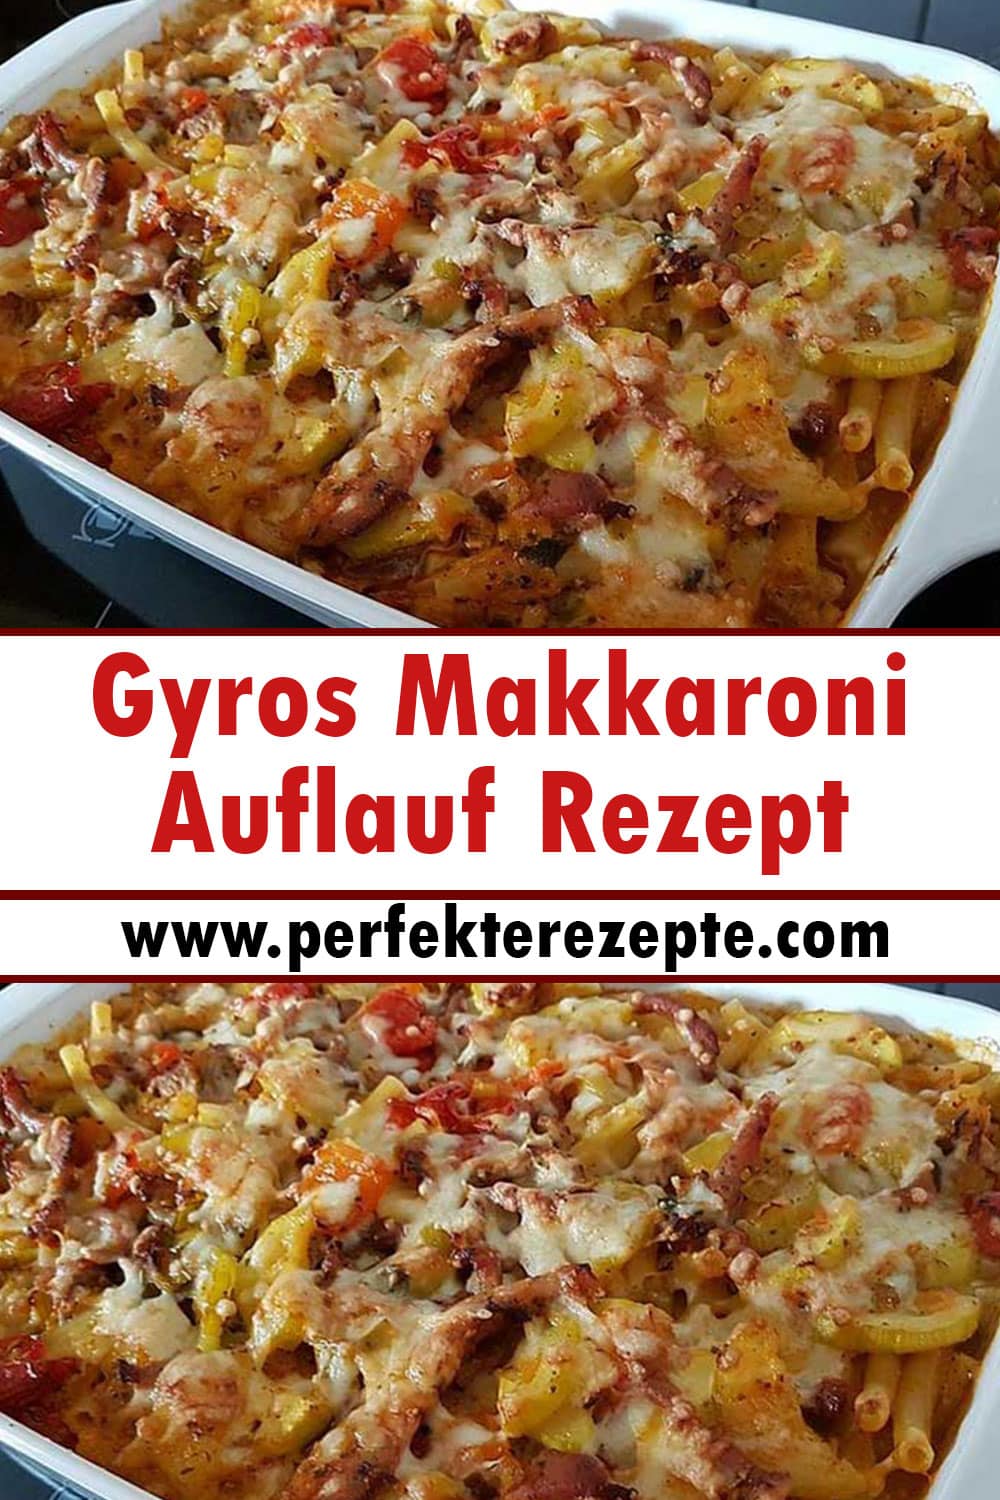 Gyros Makkaroni Auflauf Rezept